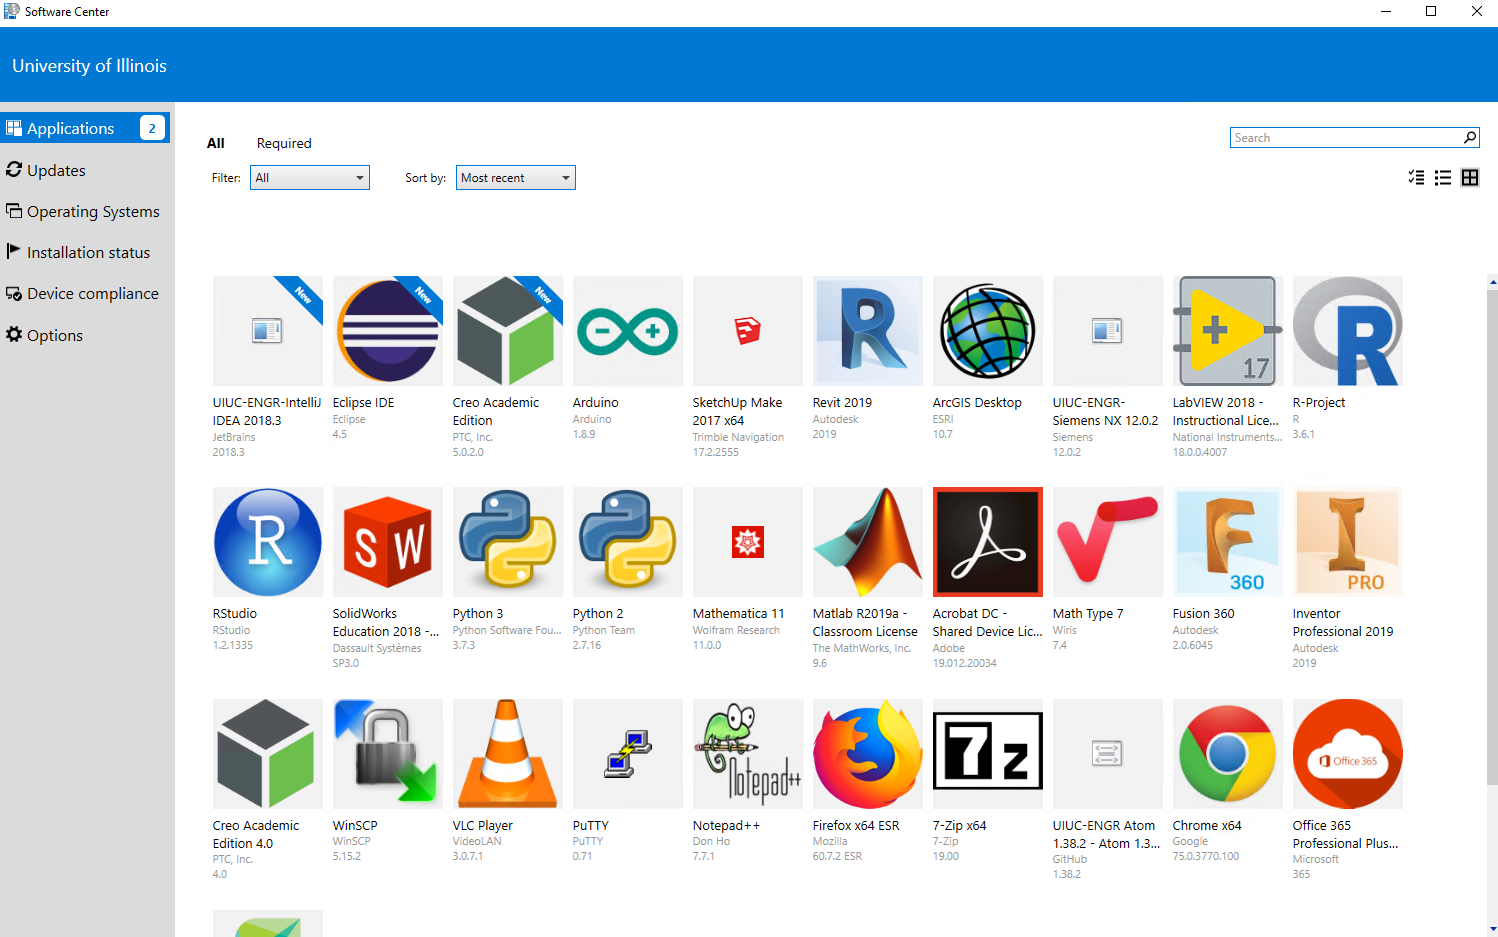 Screenshot of the Software Center applications list